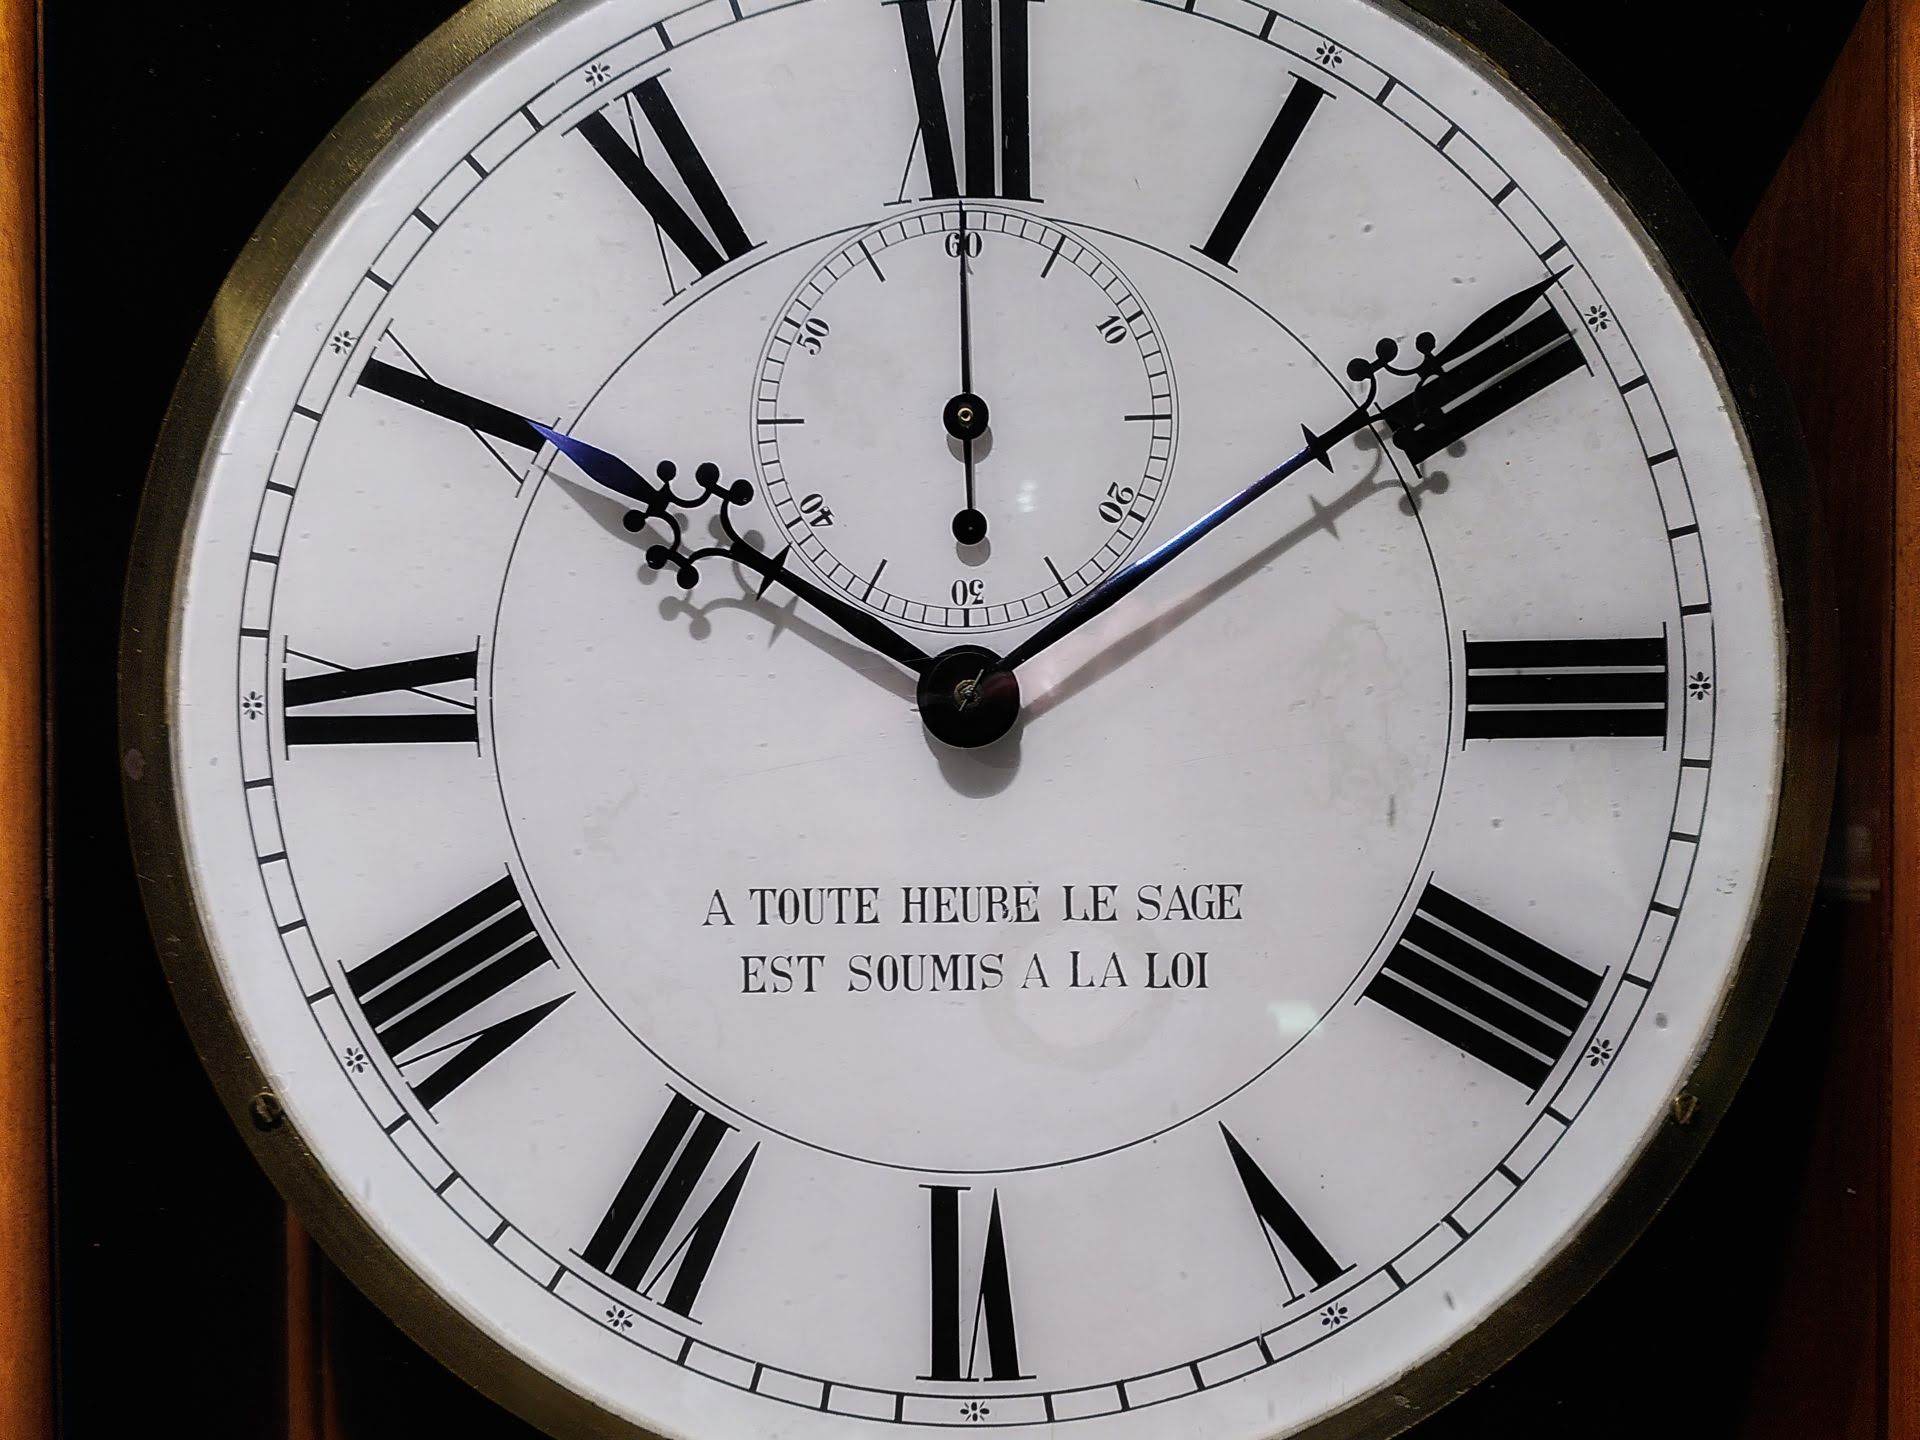 A clock face with an inscription in French: "à toute heure le sage est soumis à la loi"